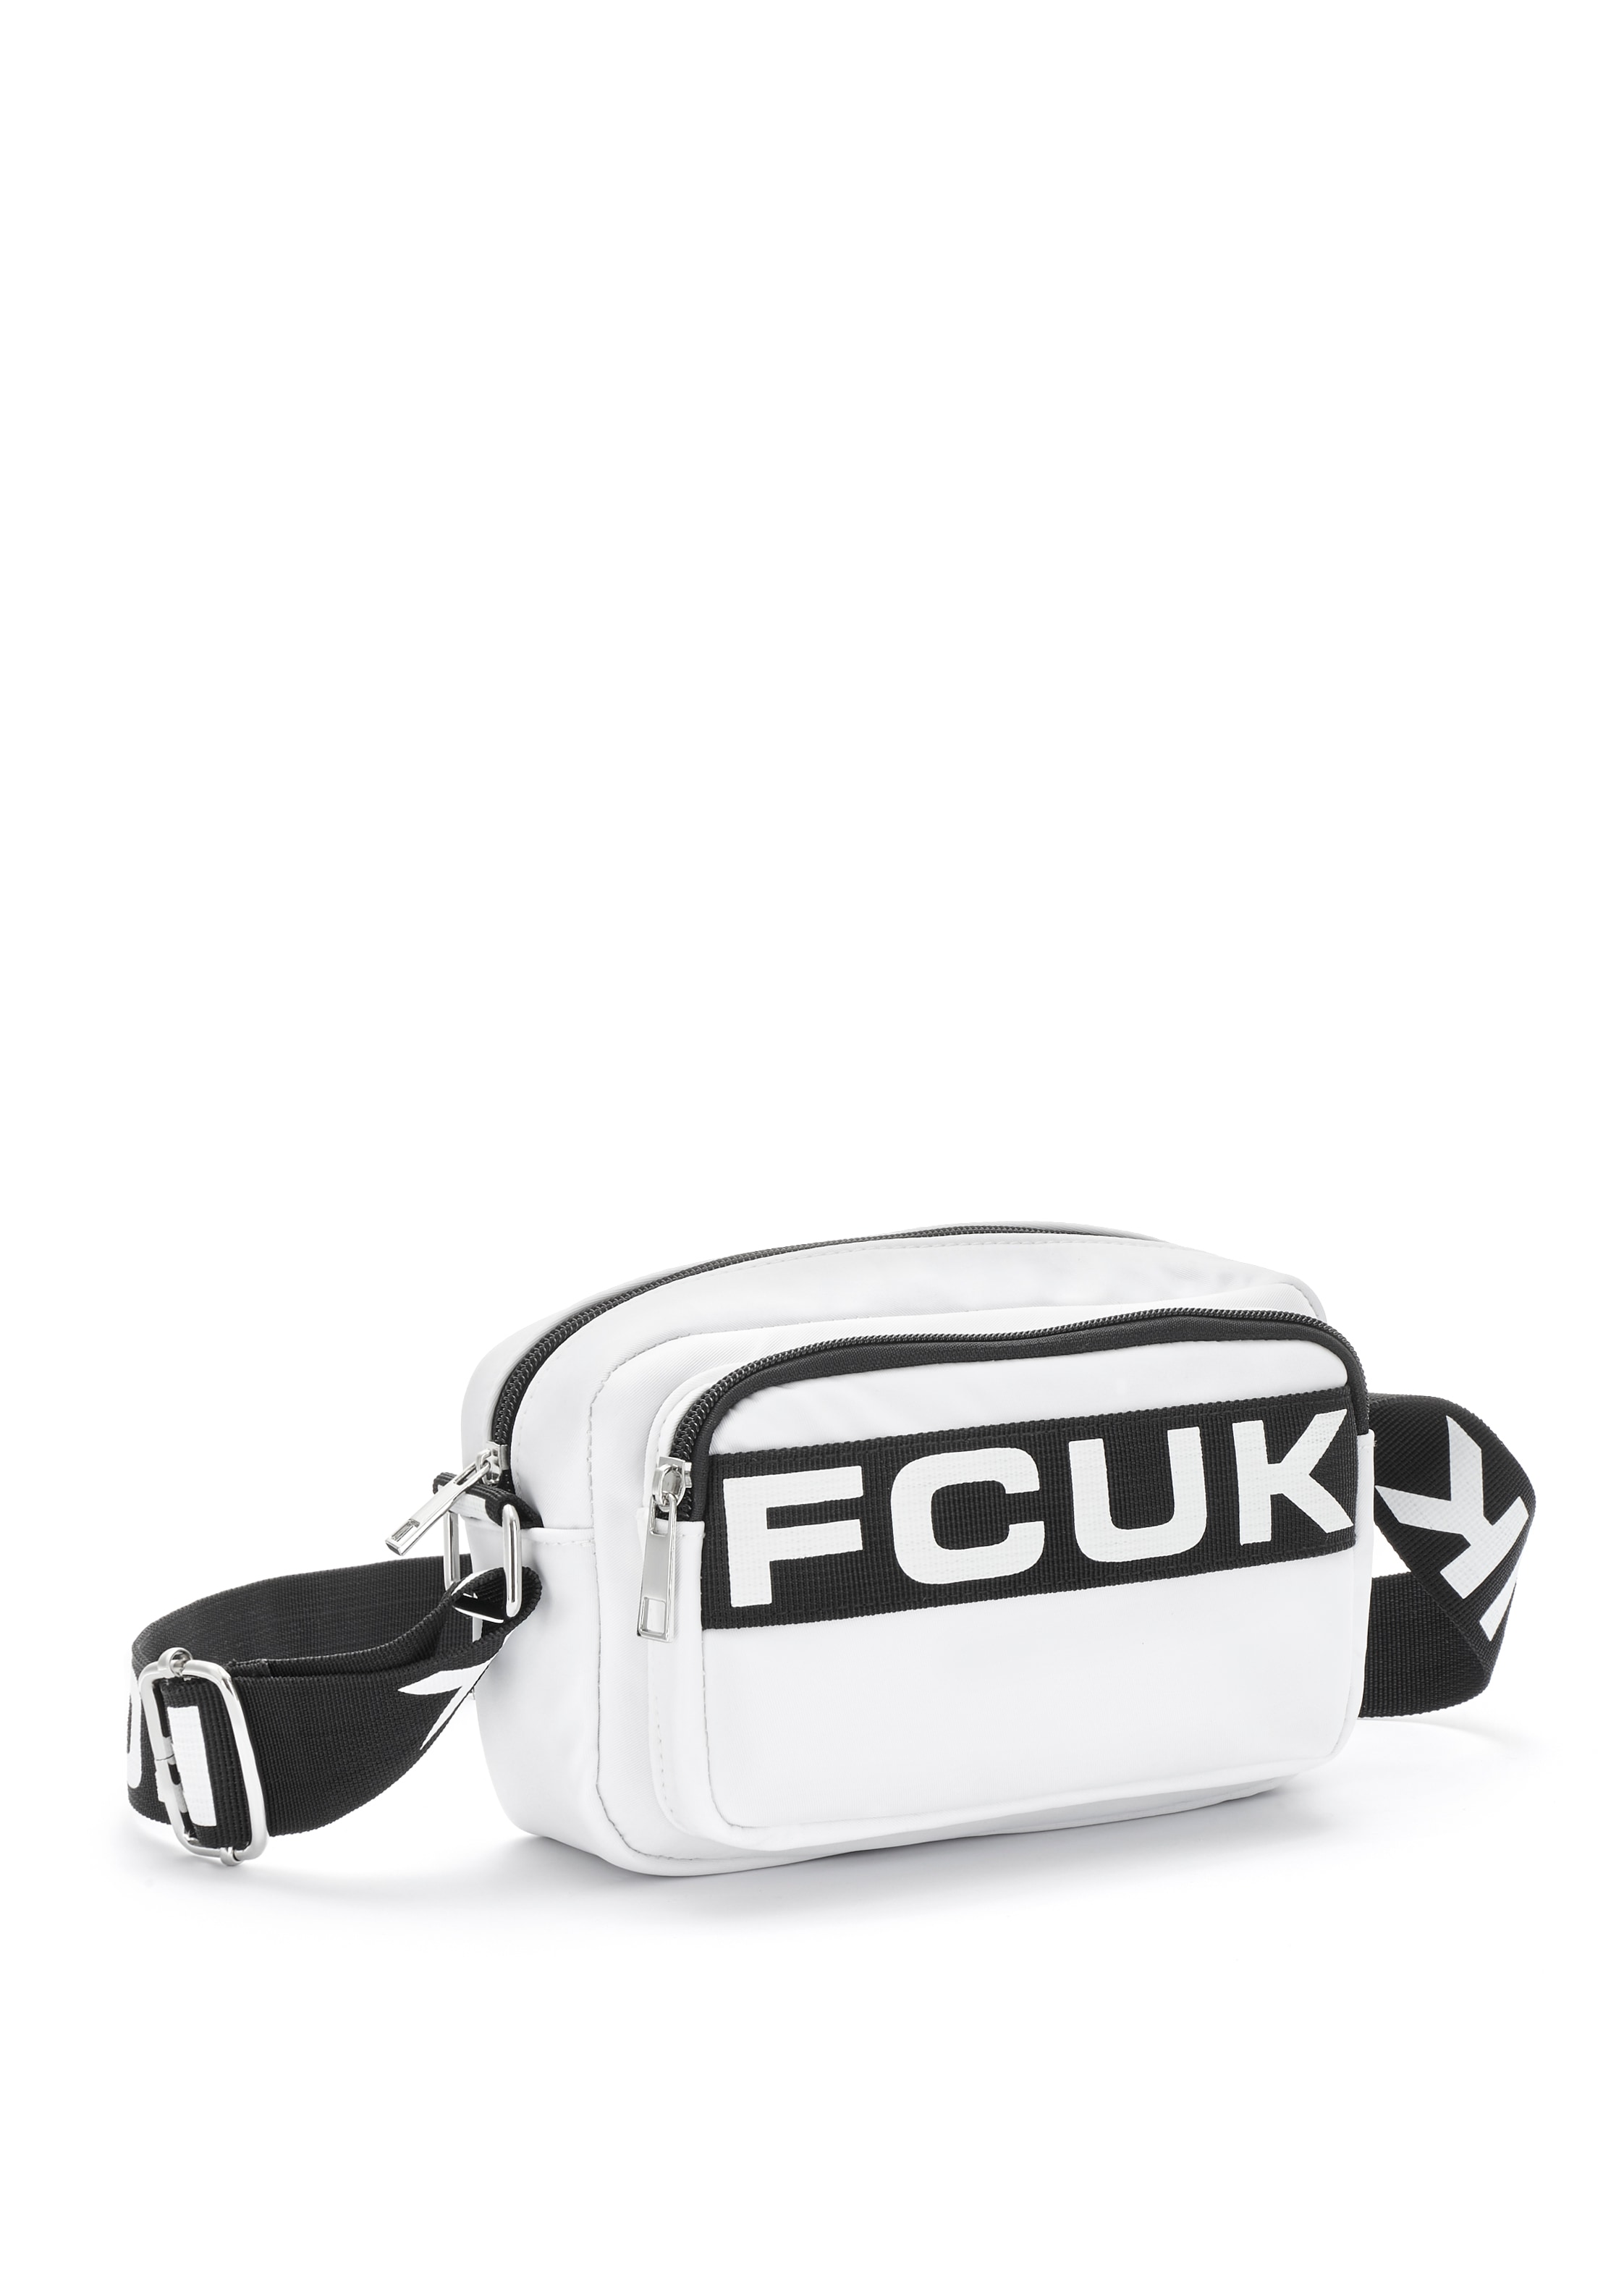 FCUK Umhängetasche "Minibag", Minibag, Handtasche mit verstellbarem Schulterriemen VEGAN